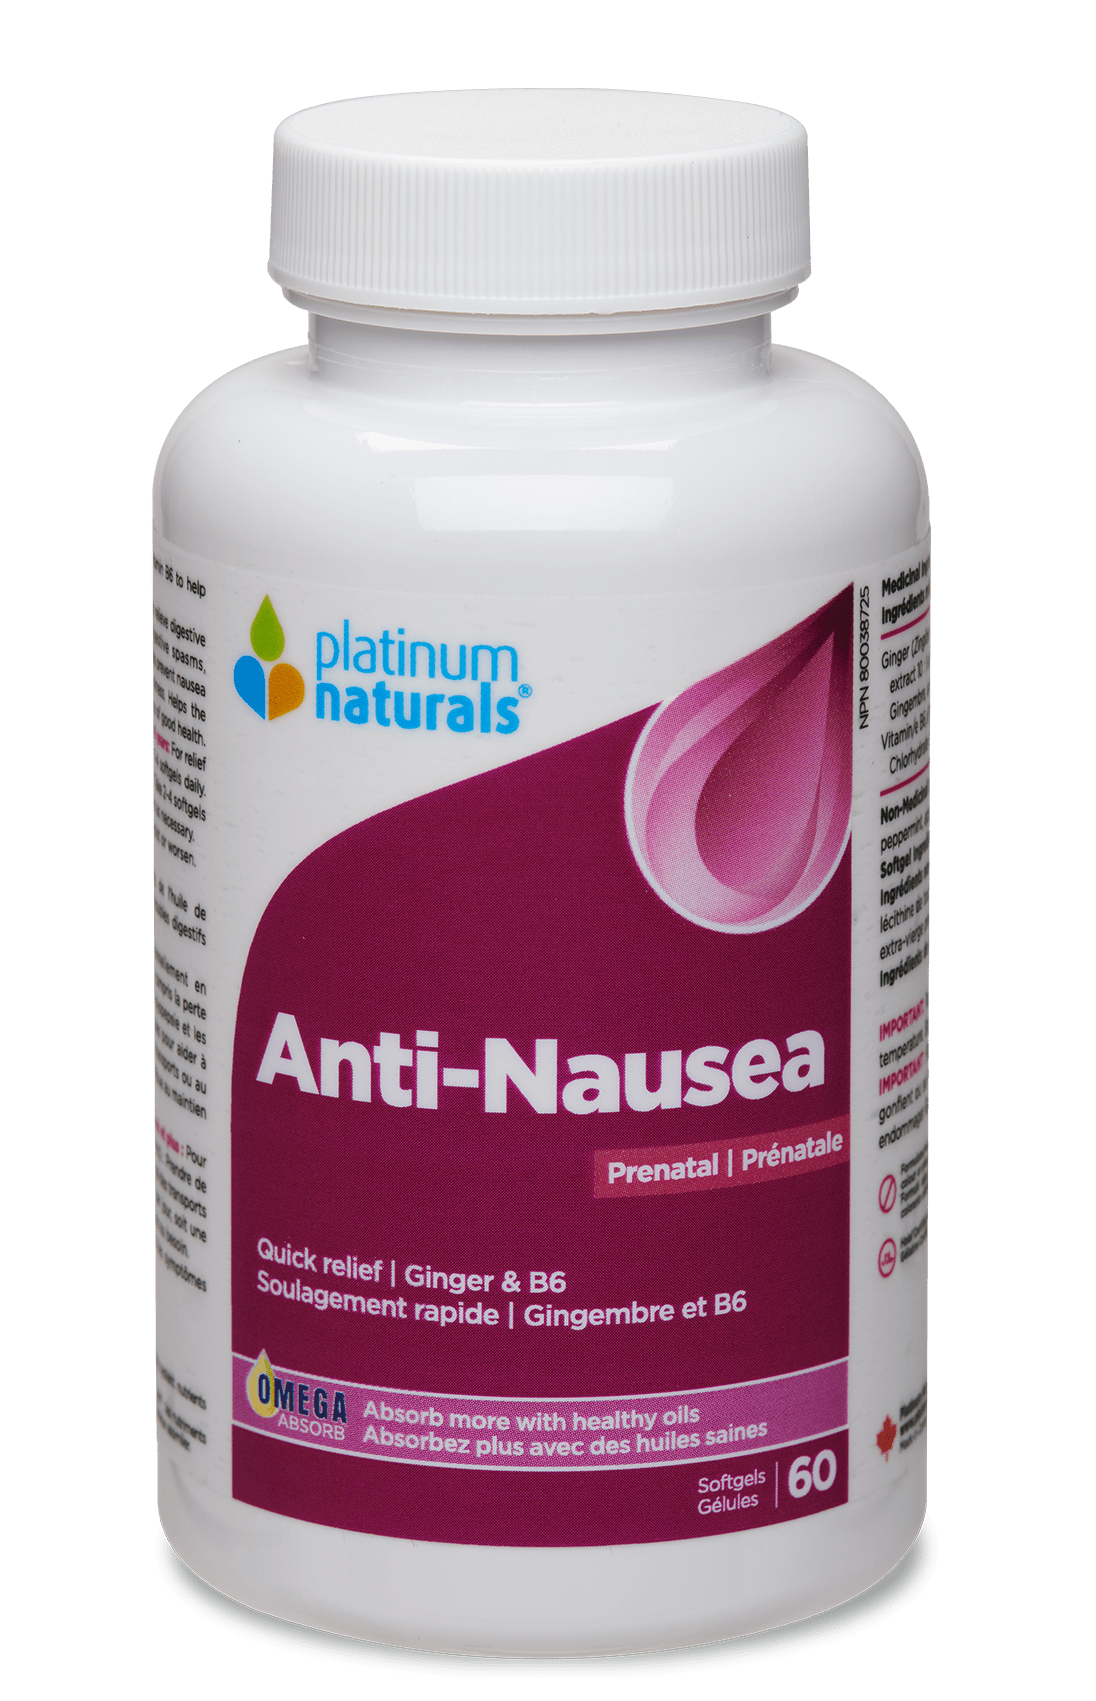 Platinum Naturals Prenatal Anti-Nausea 60 Softgels